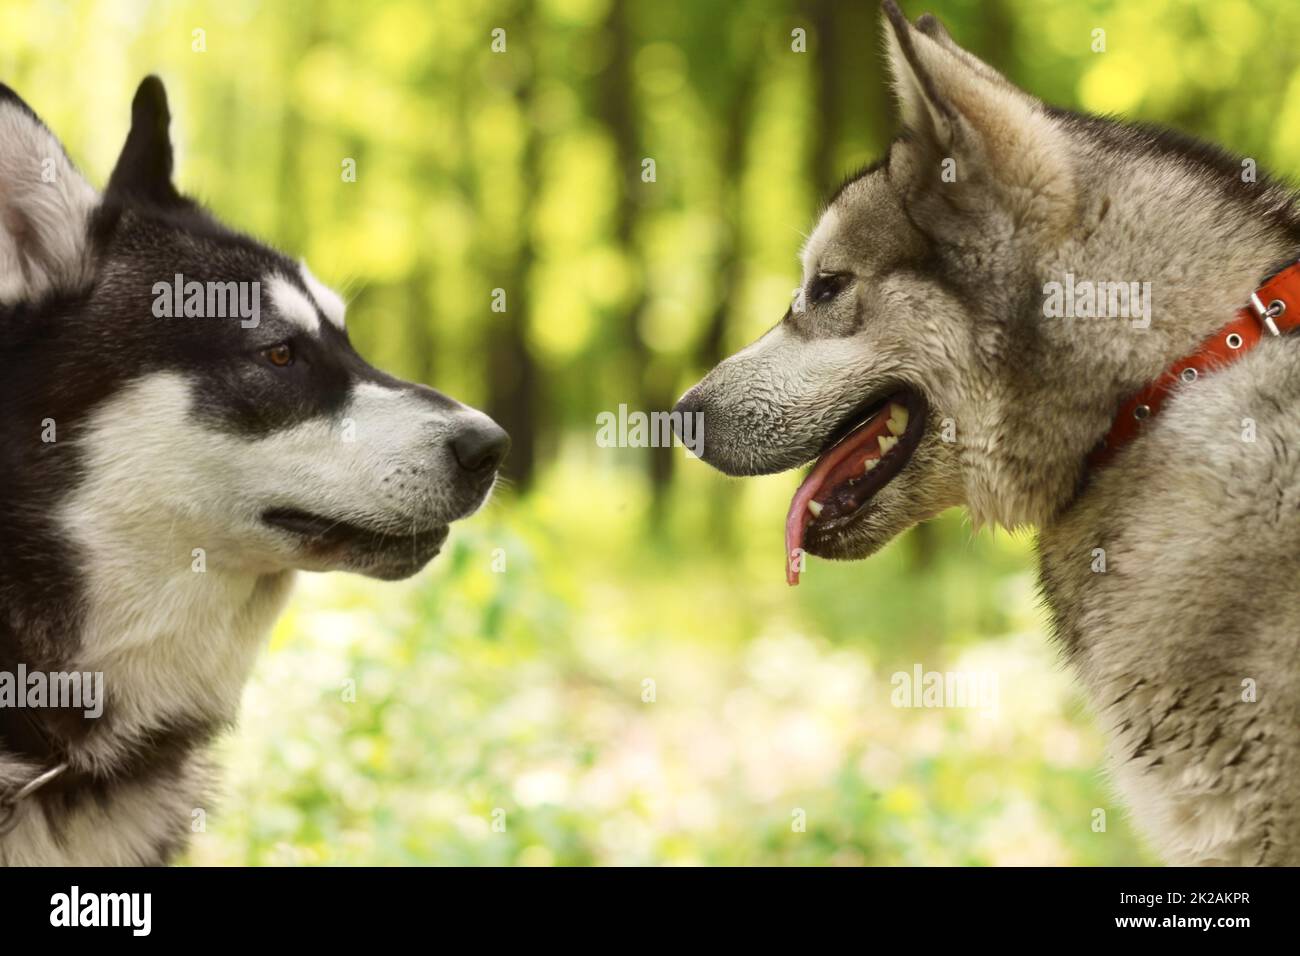 Ein gut sozialisierter Hund ist ein glücklicher Hund. Zwei Huskies, die sich im Park kennen lernen - Tierleben. Stockfoto